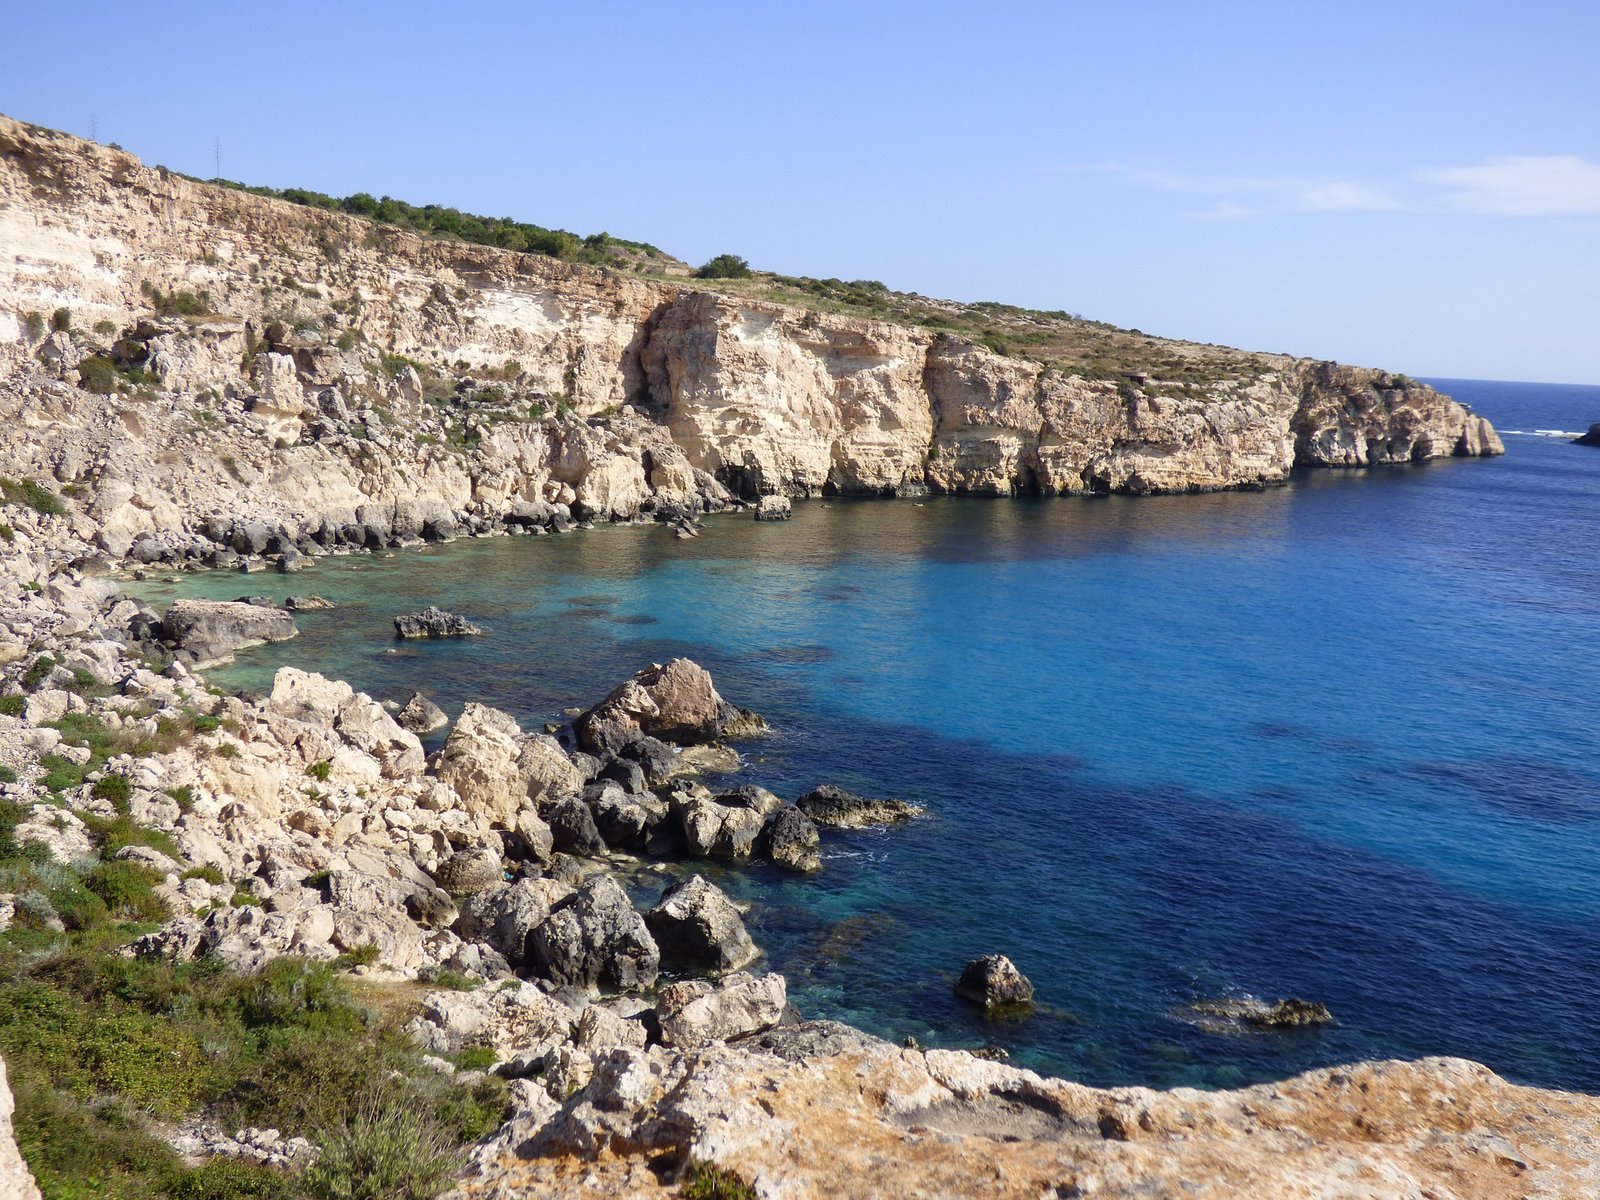 Le spiagge più belle di Malta, Gozo e Comino - San Blas